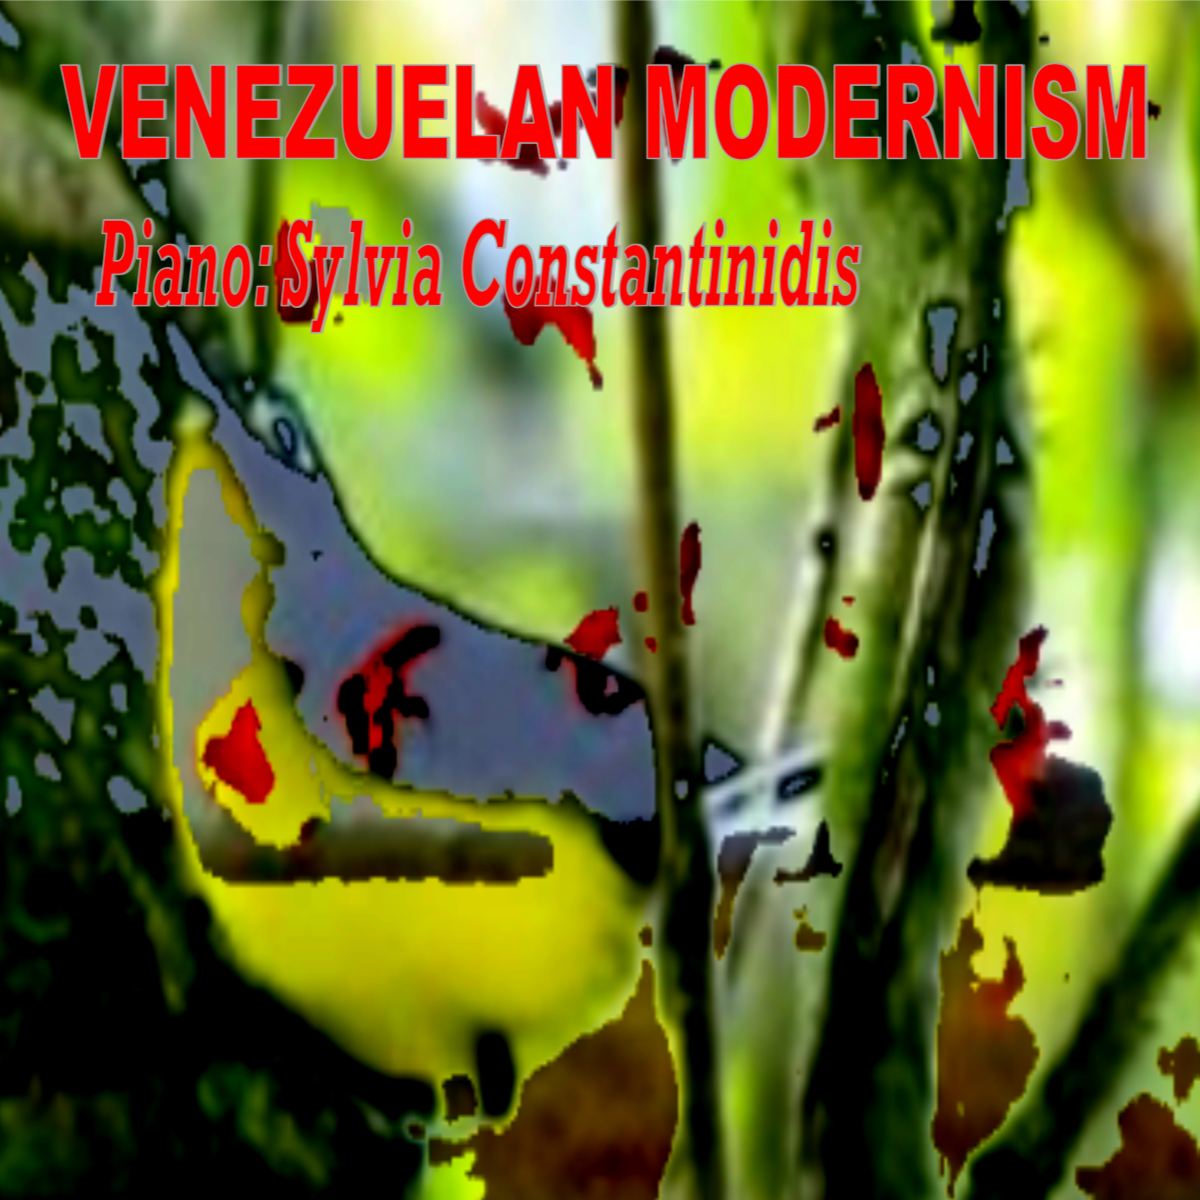 CD COVER Venezuelan Modernism . SylviaConstantinidis